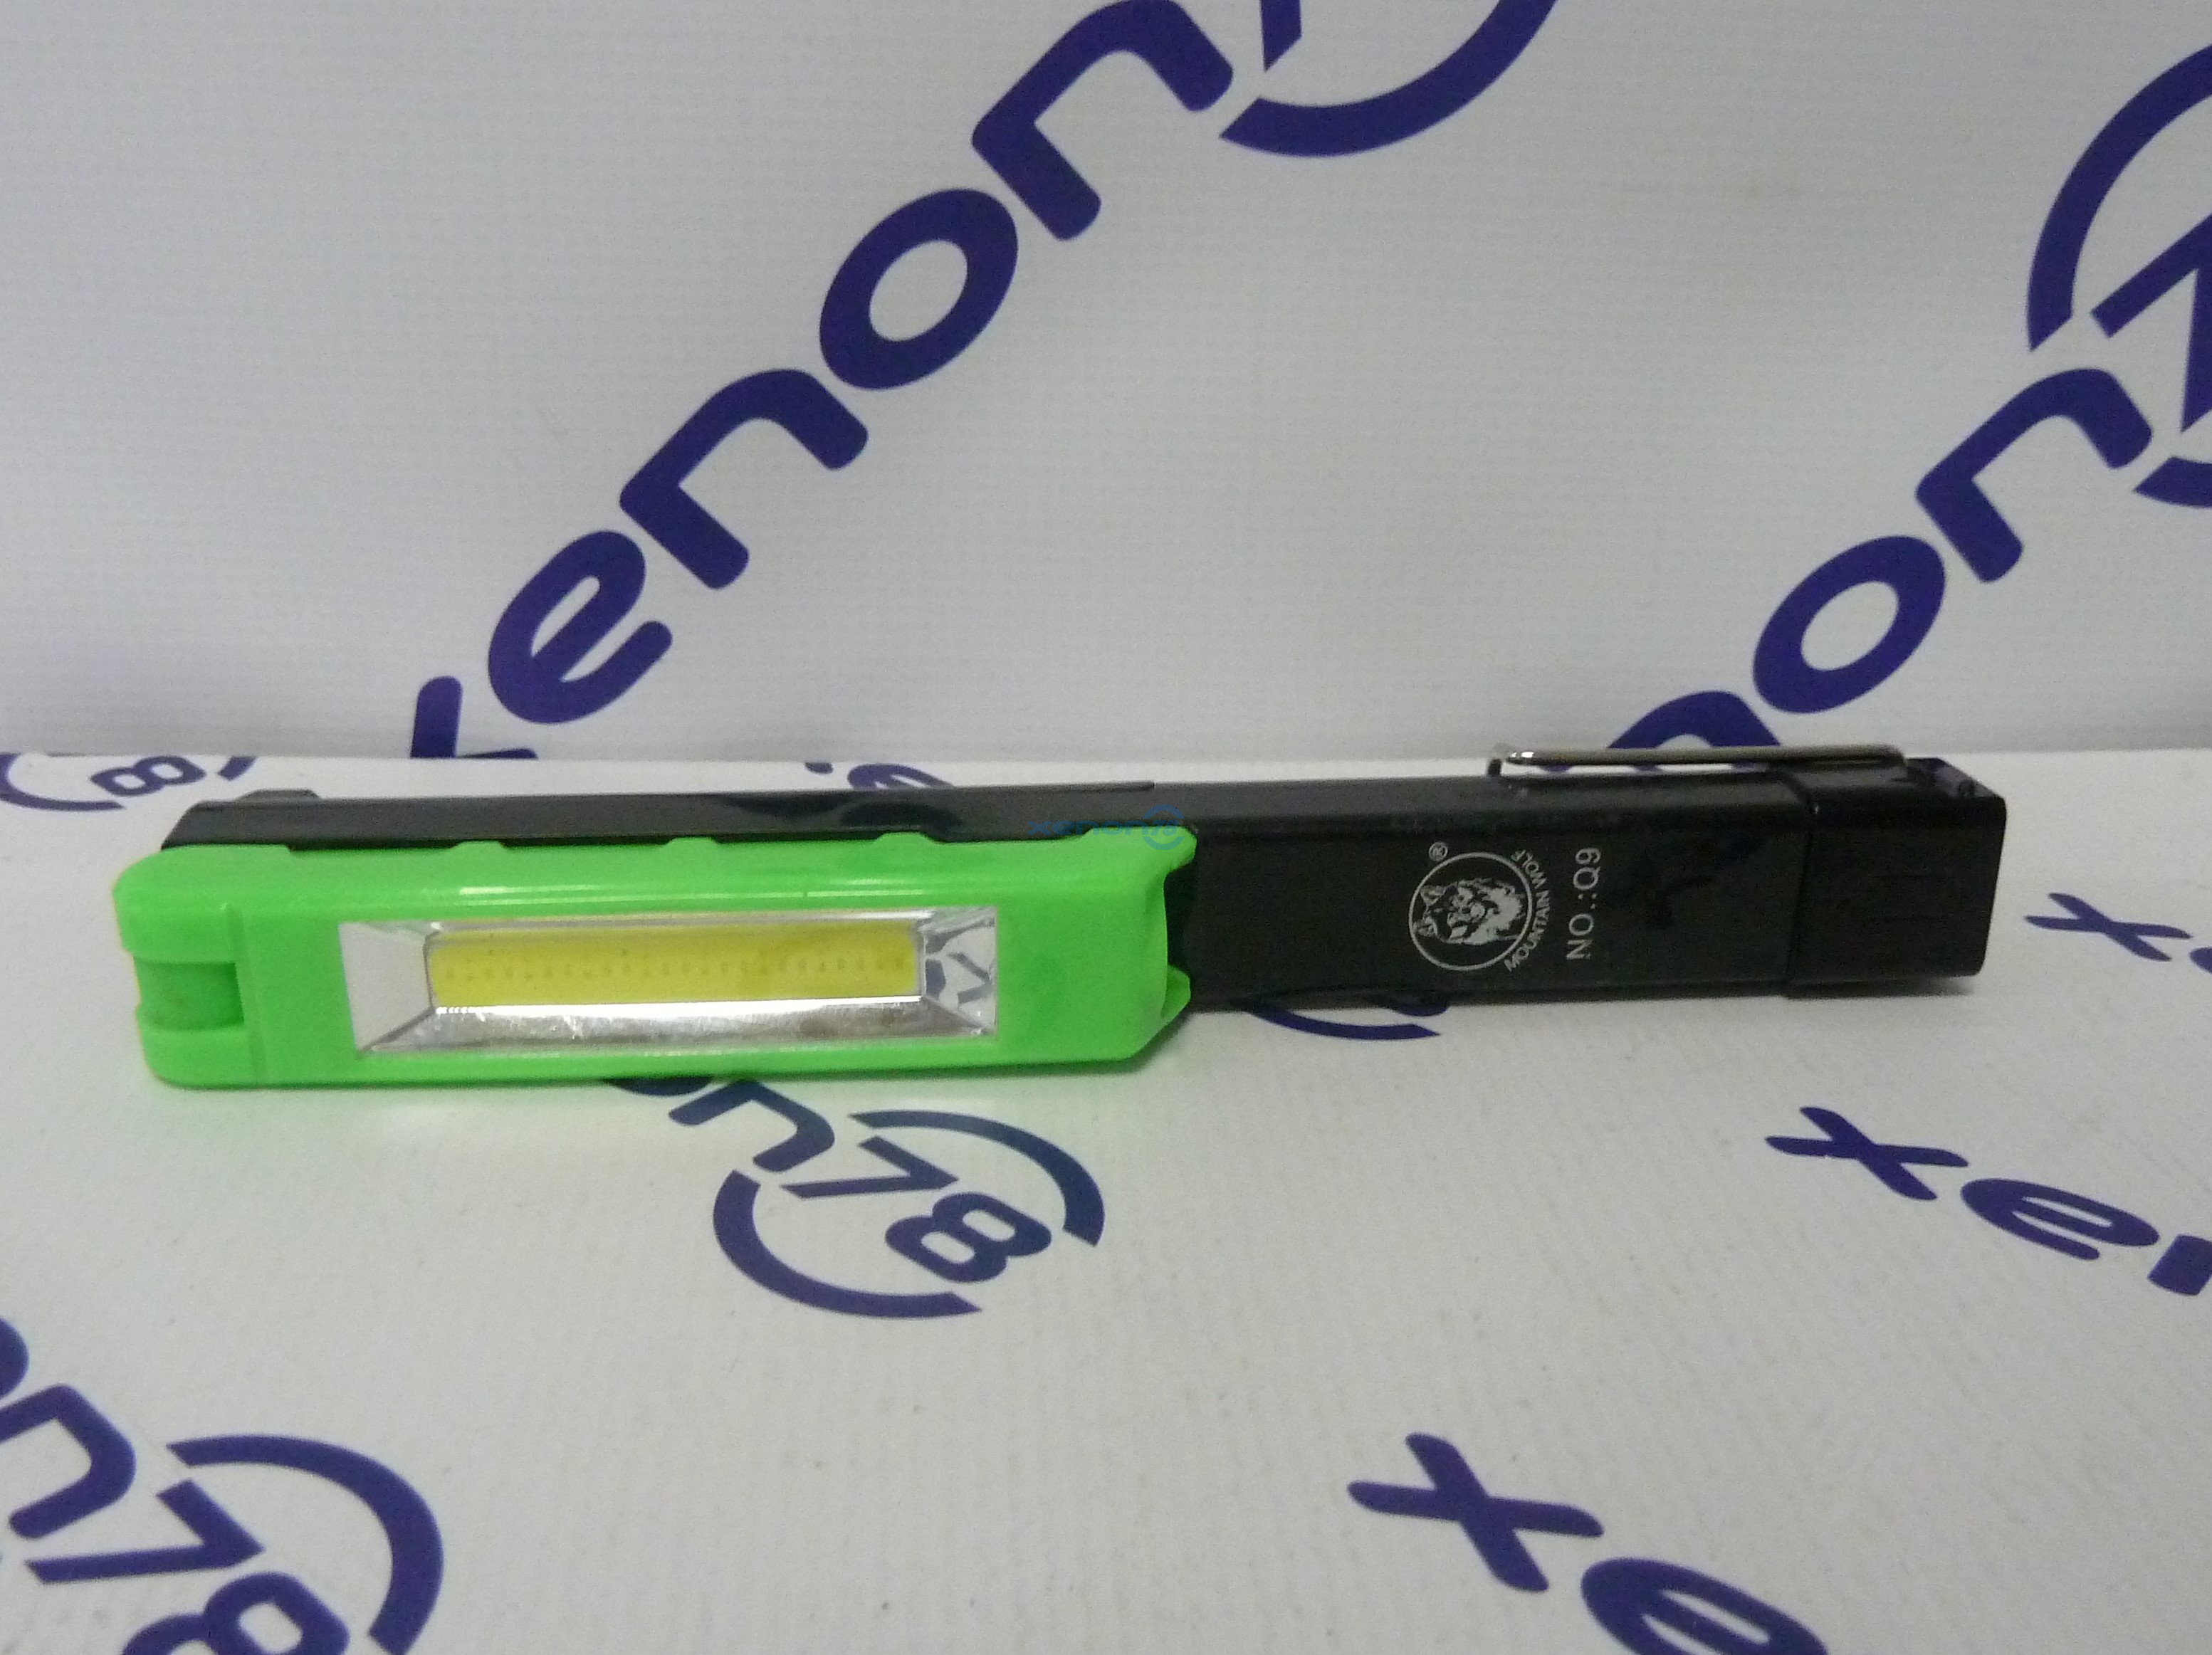 Фонарь светодиодный  Police-7001 ручка (CREE + COB, магнит, ААА)